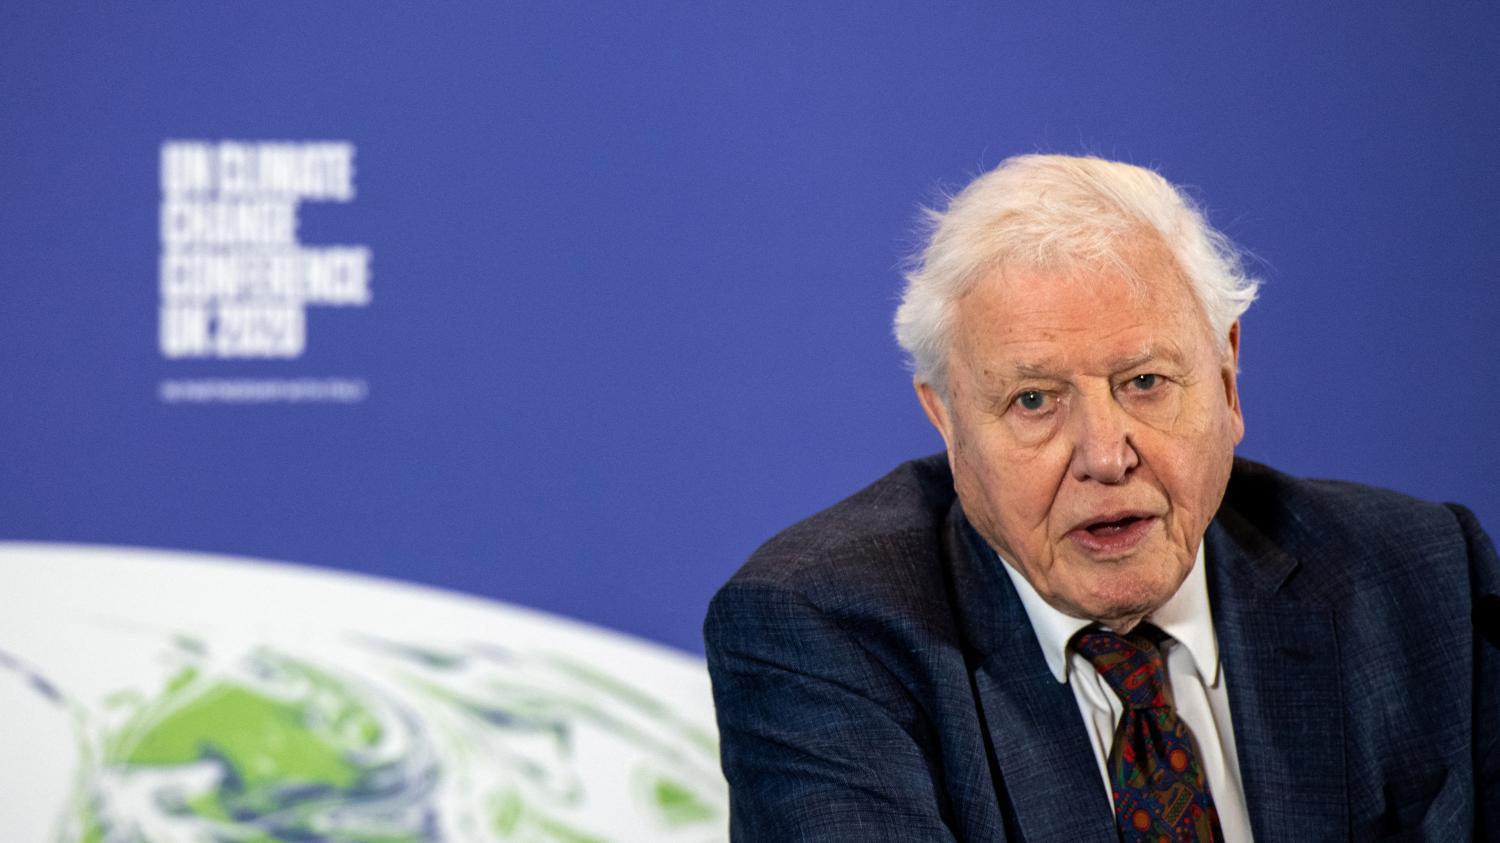 Le naturaliste David Attenborough, 95 ans, exhorte le G7 à agir sur le climat : 'Tout ce qui manque, c’est la volonté'